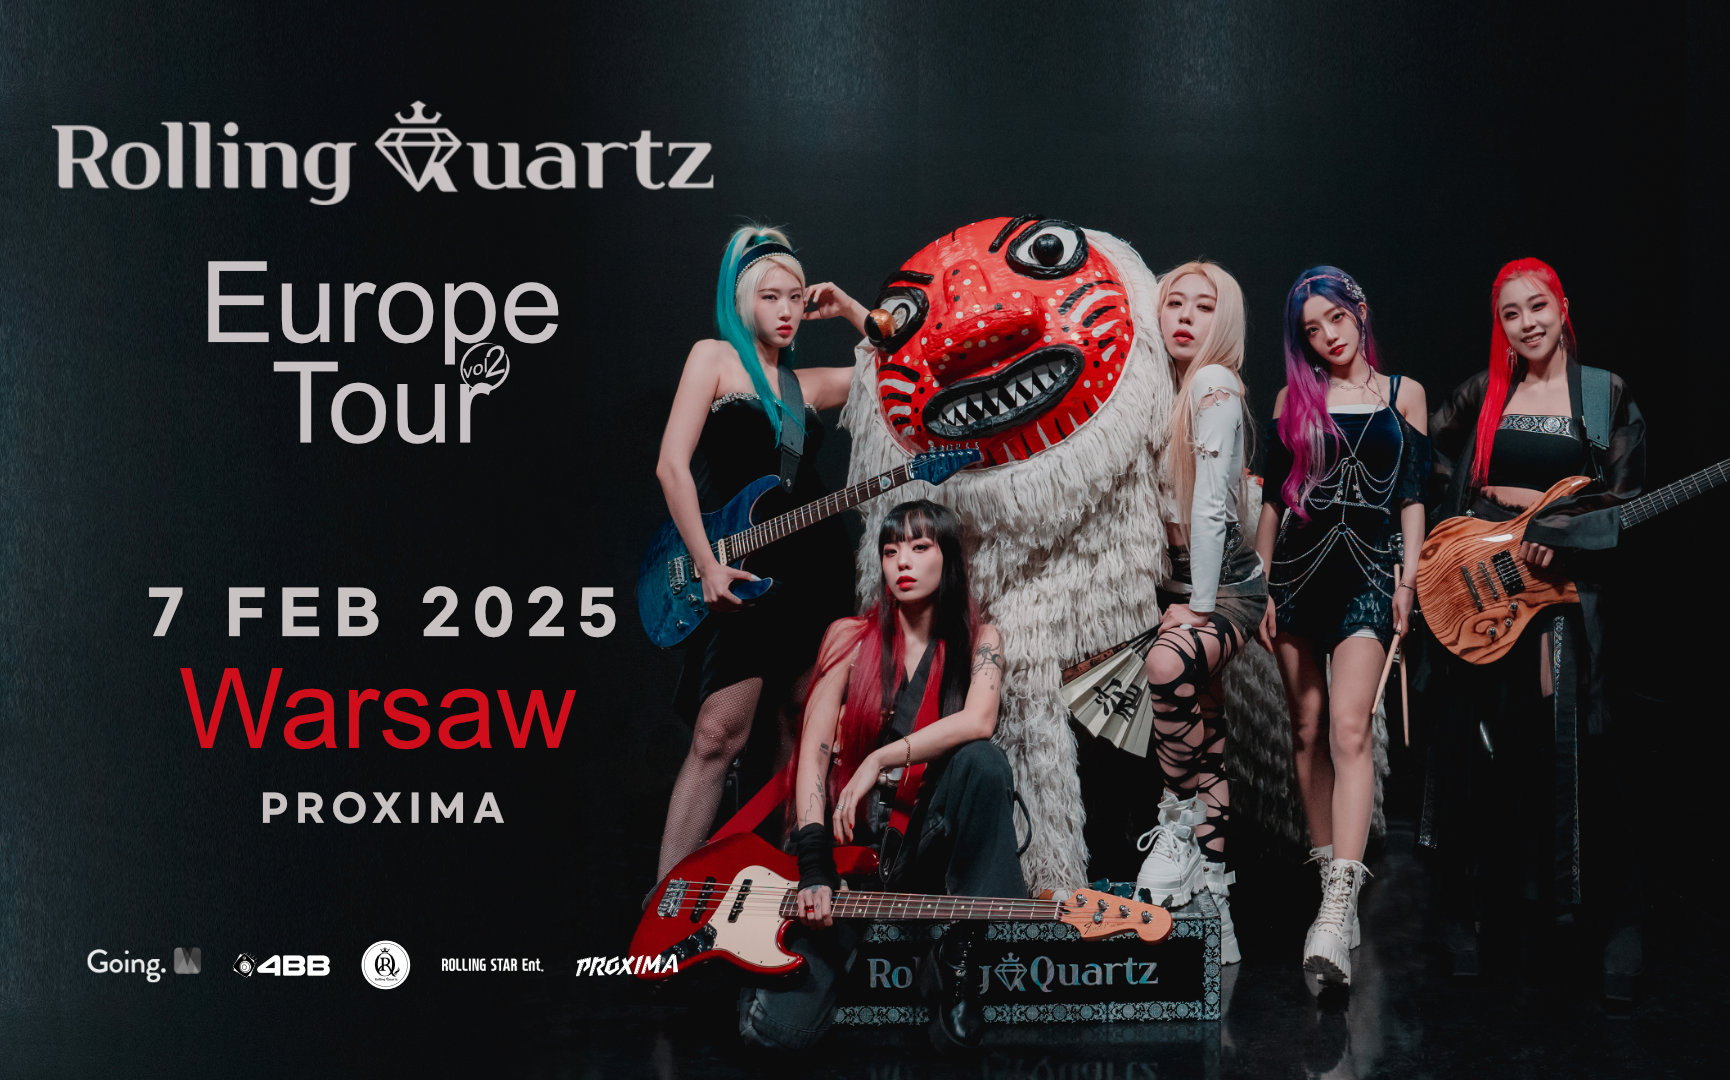 Rolling Quartz Europe Tour vol. 2